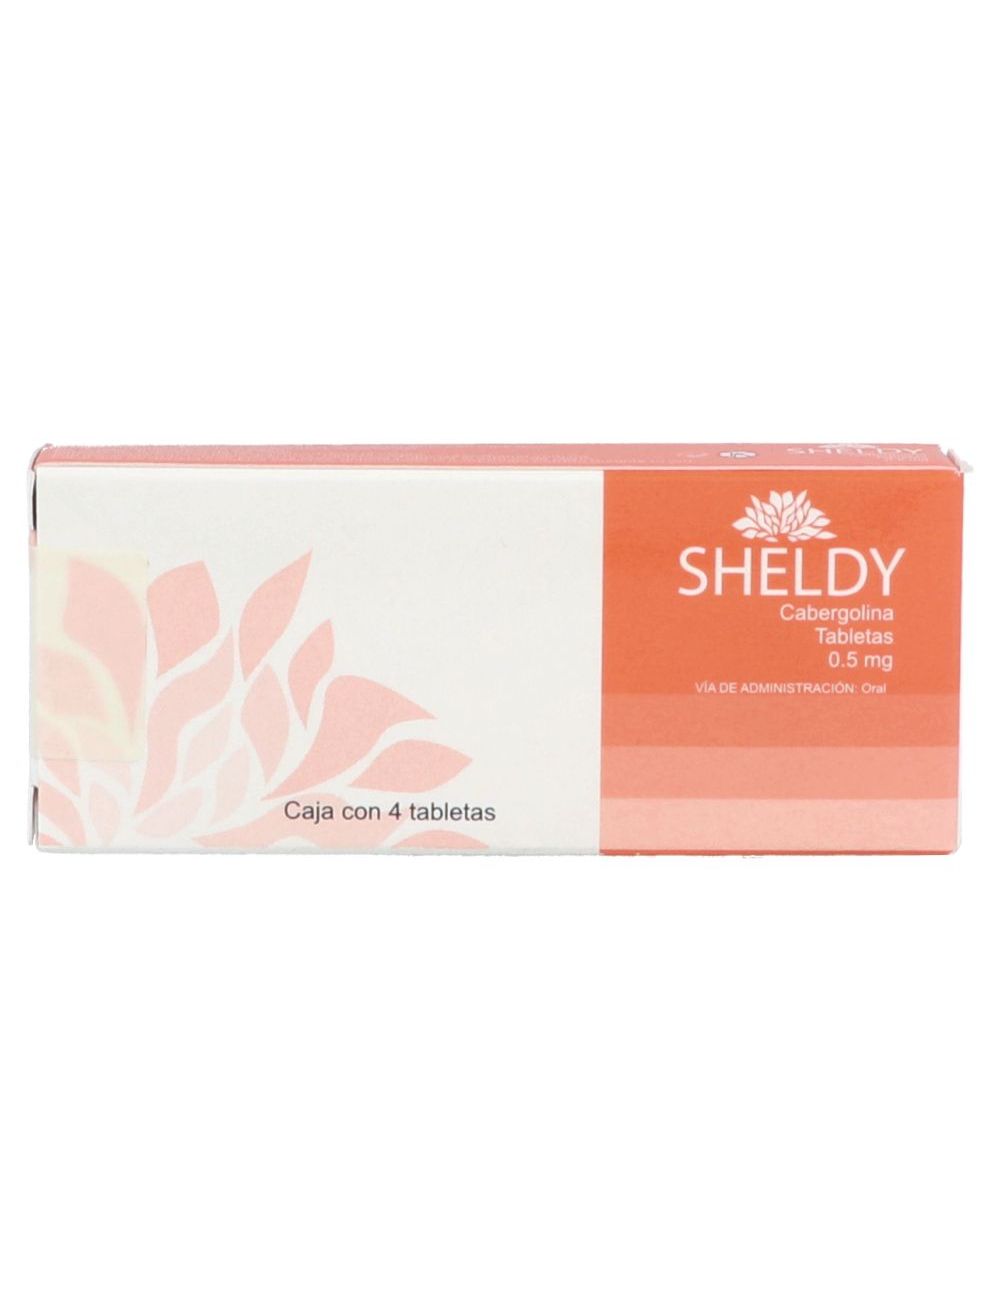 Sheldy 0.5 mg Caja Con 4 Tabletas